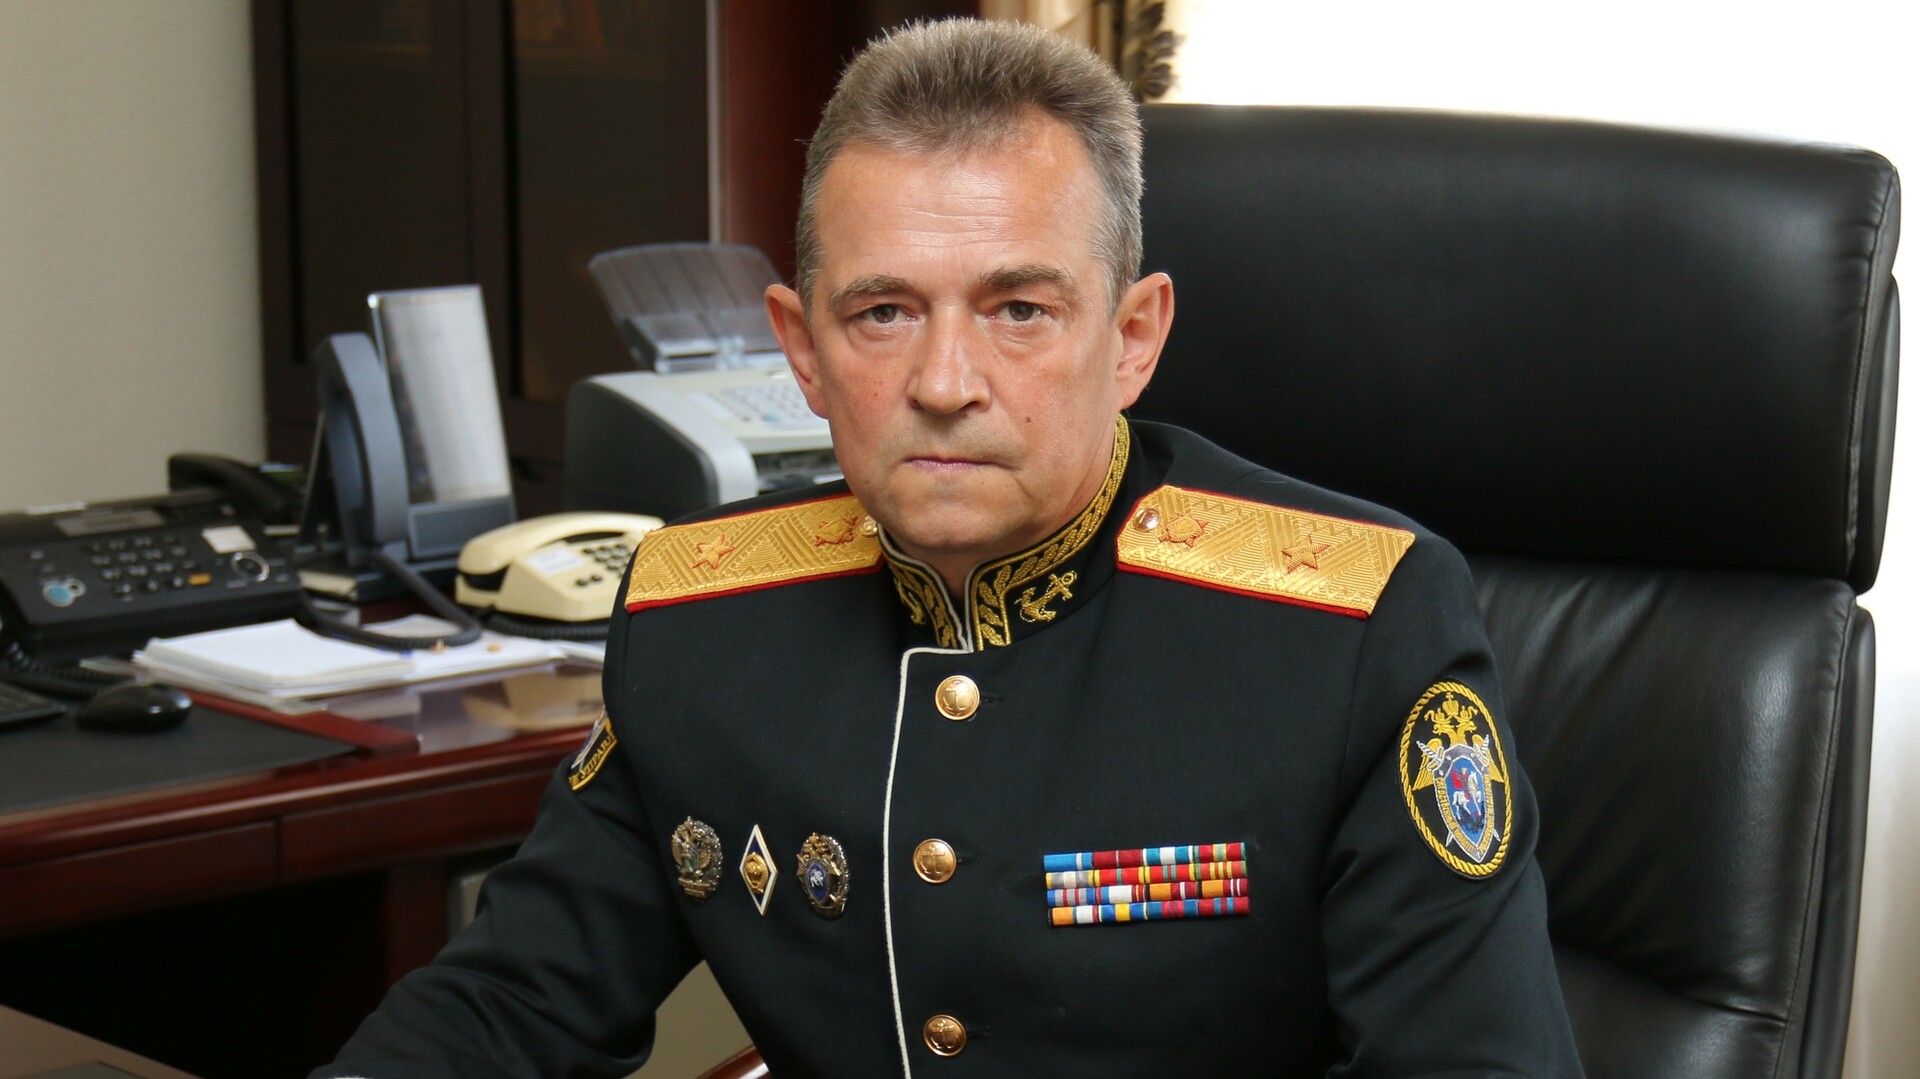 Руководитель военного следственного комитета. Грунин генерал юстиции.